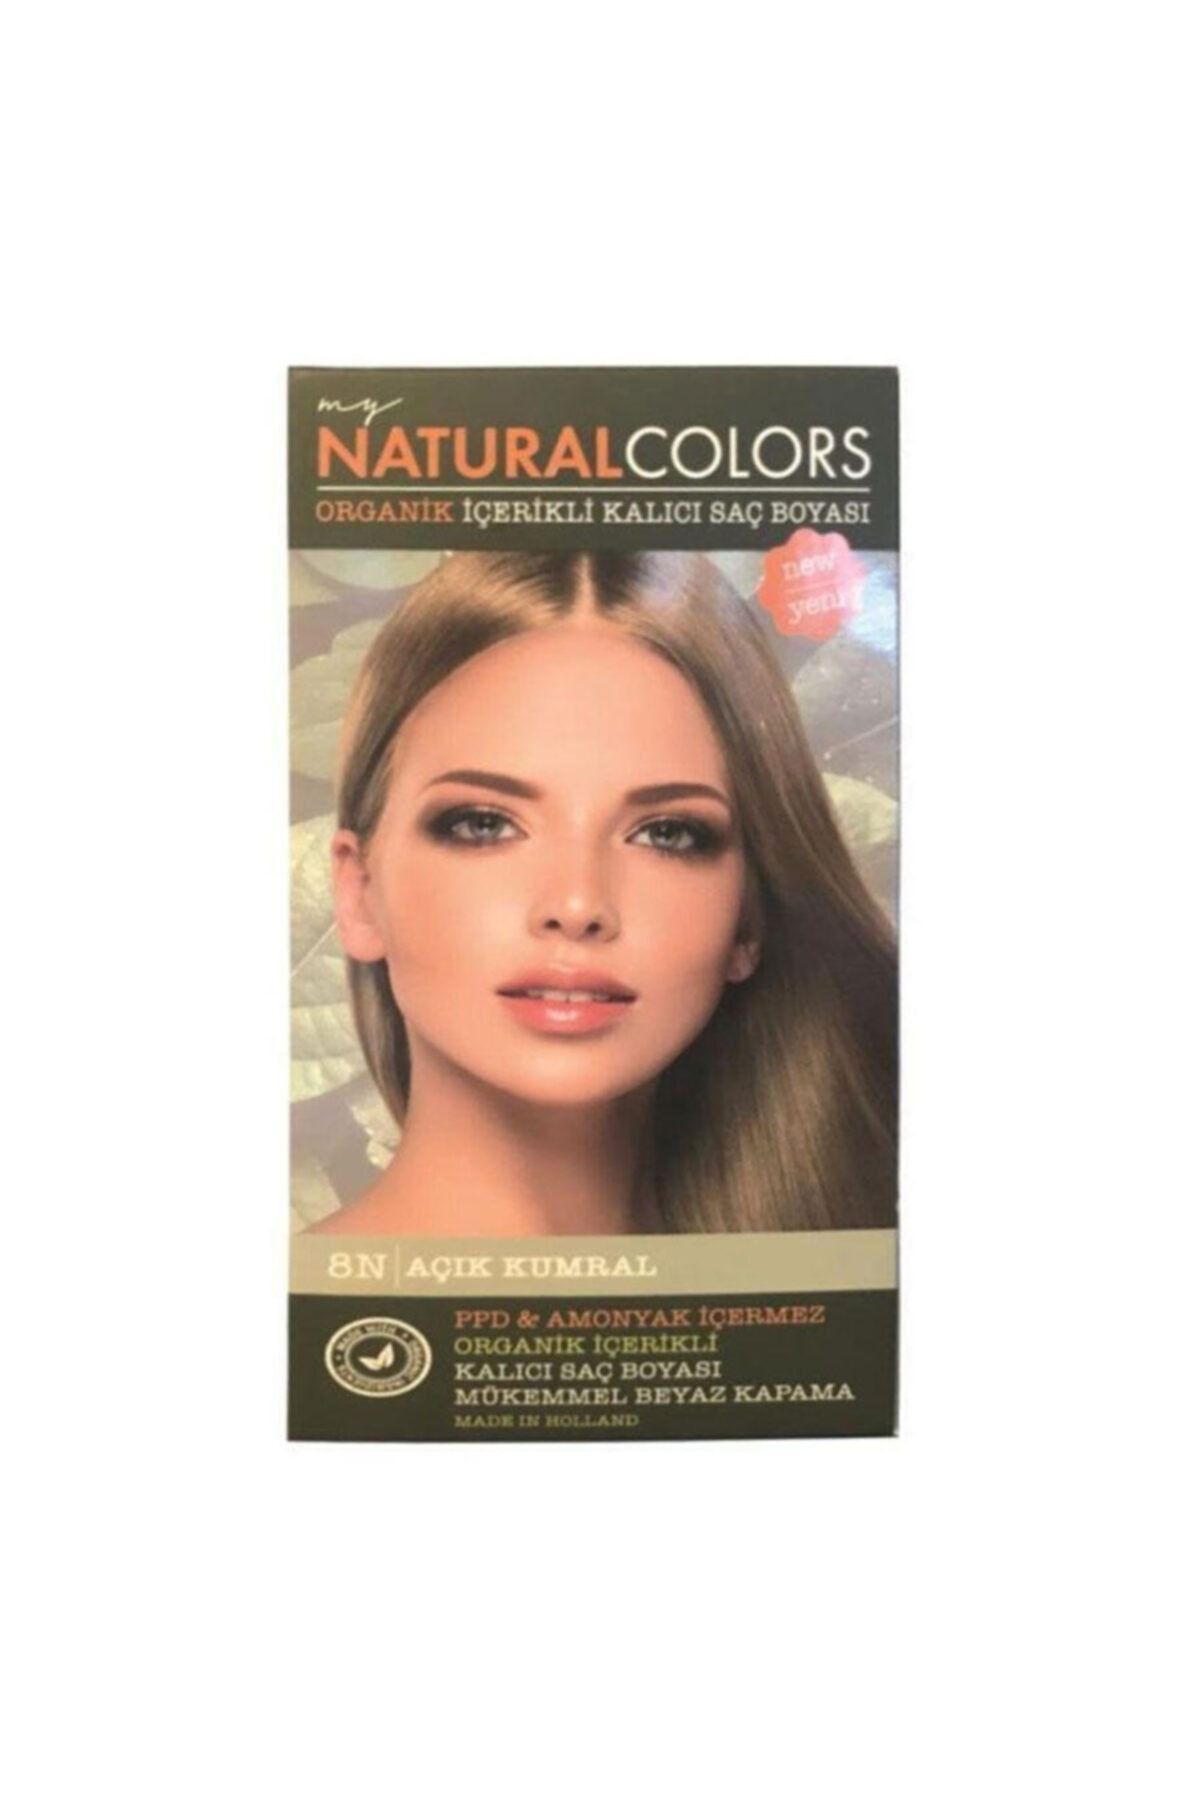 Organic Natural Colors Natural Colors 8n Açık Kumral Organik Saç Boyası